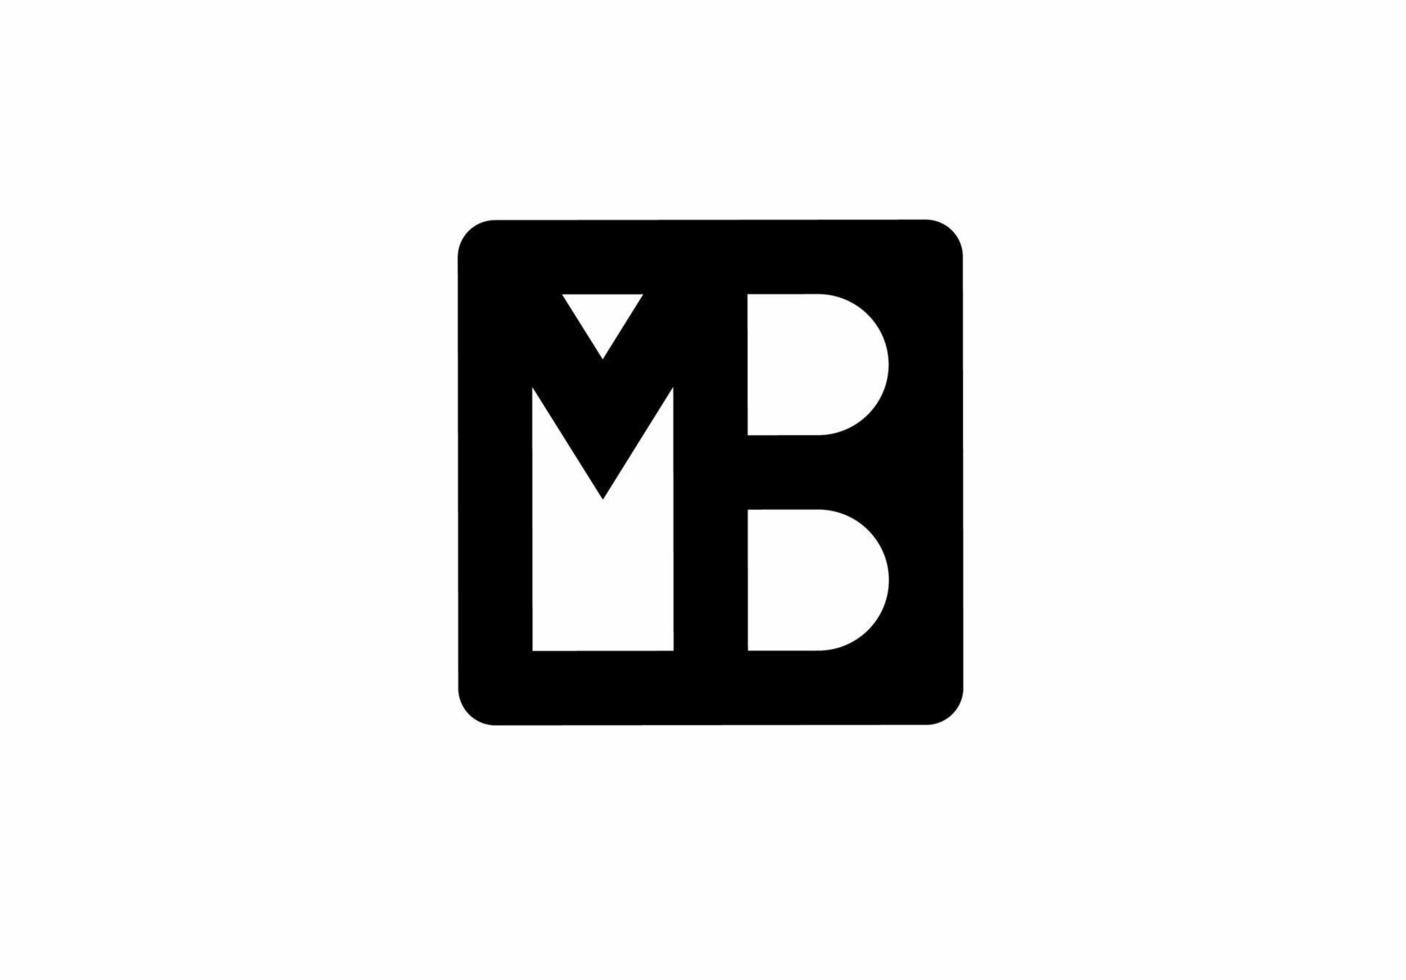 mb bm mb logotipo da letra inicial isolado no fundo branco vetor